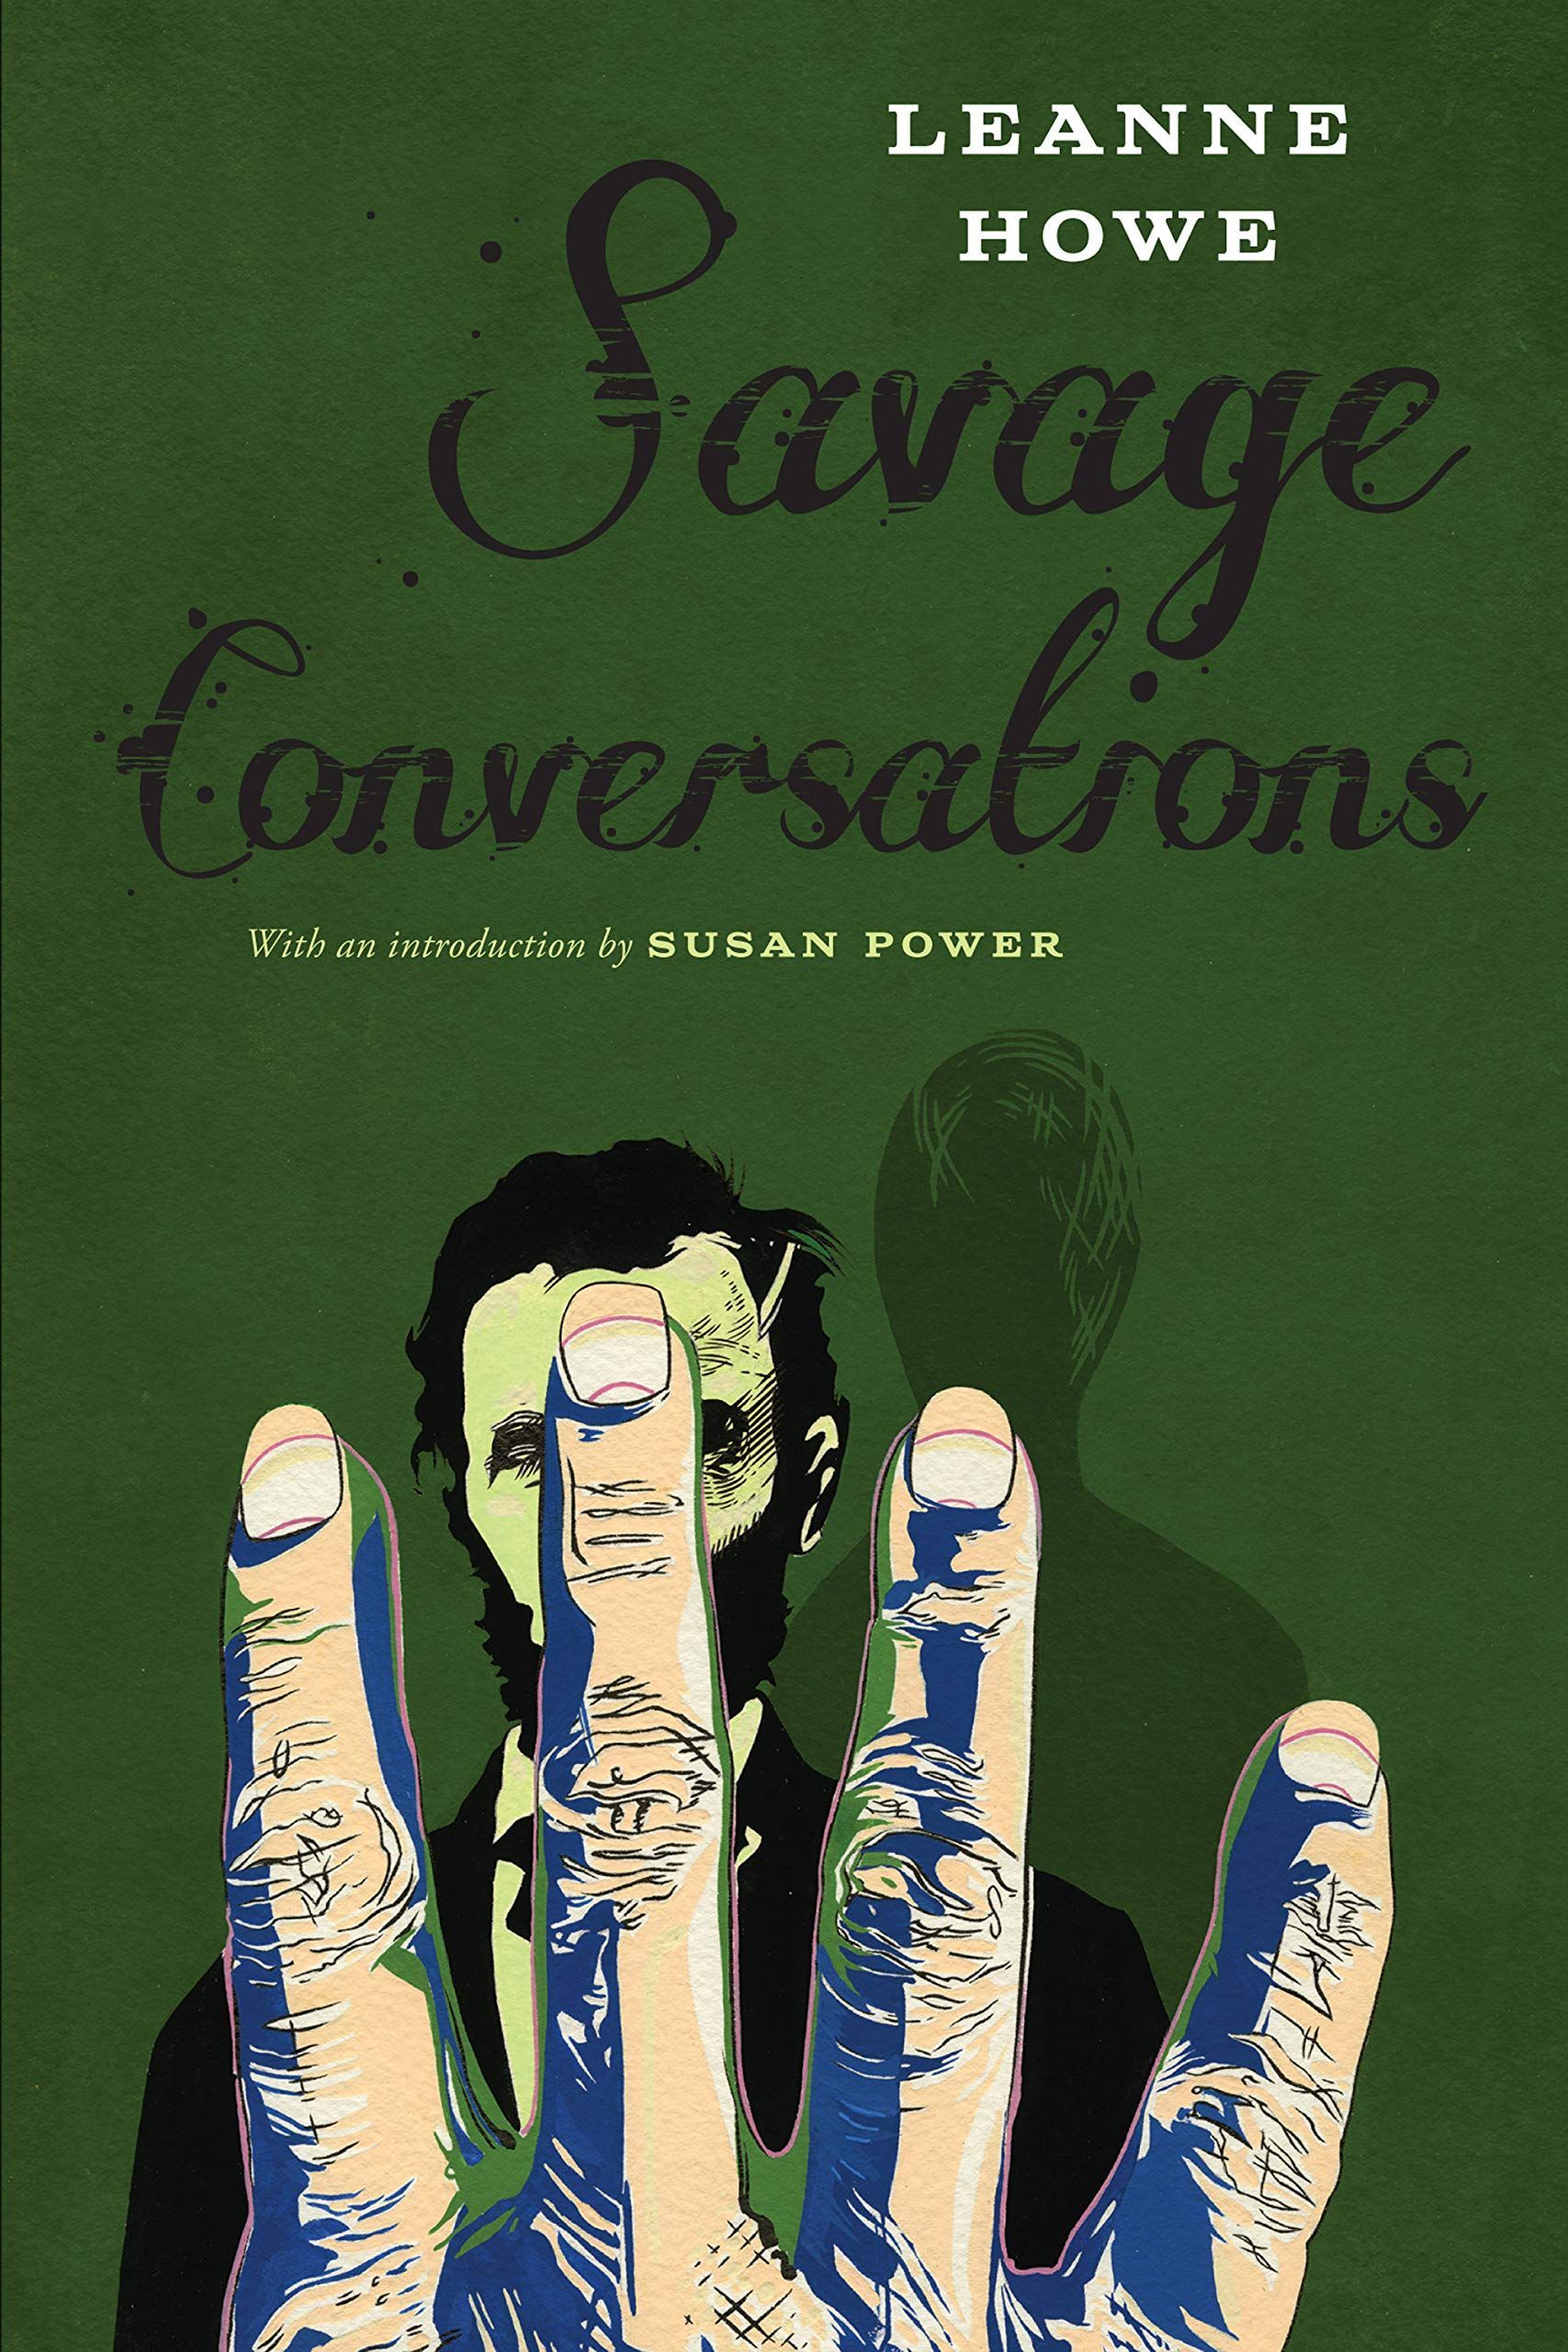 Eyes Cracking Like Egg Yolks: LeAnne Howe’s “Savage Conversations”